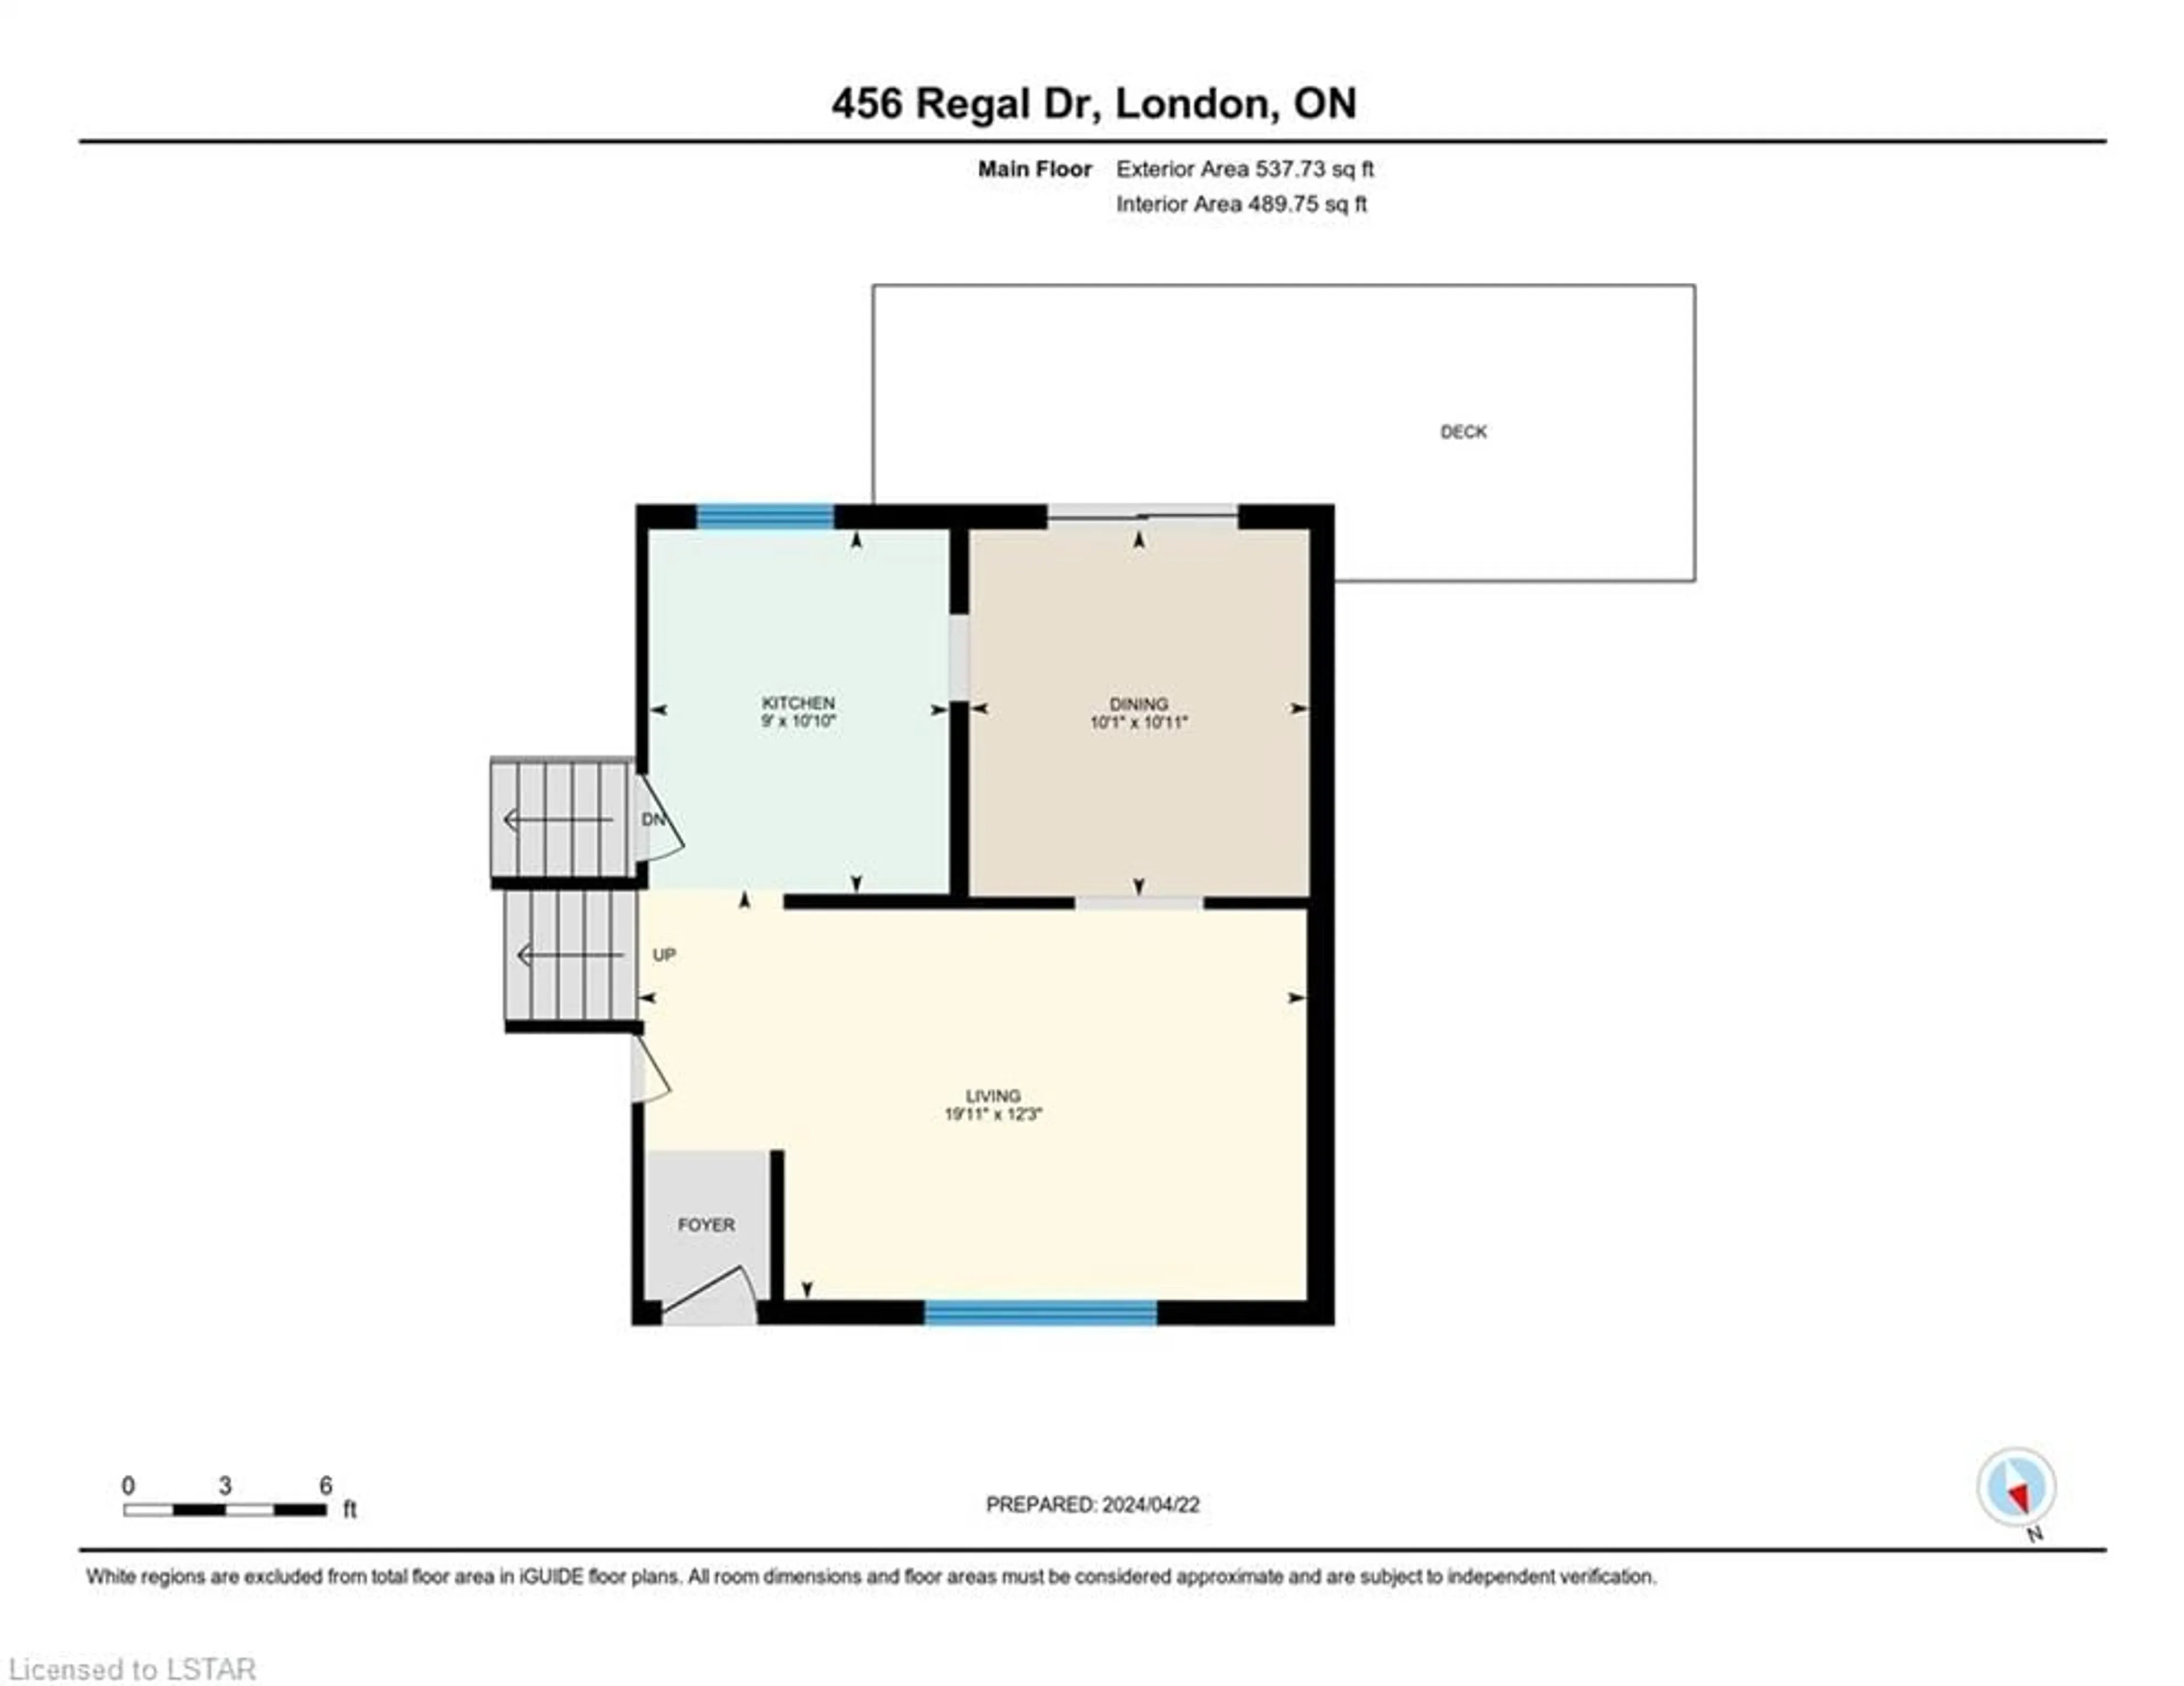 Floor plan for 456 Regal Dr, London Ontario N5Y 1J9